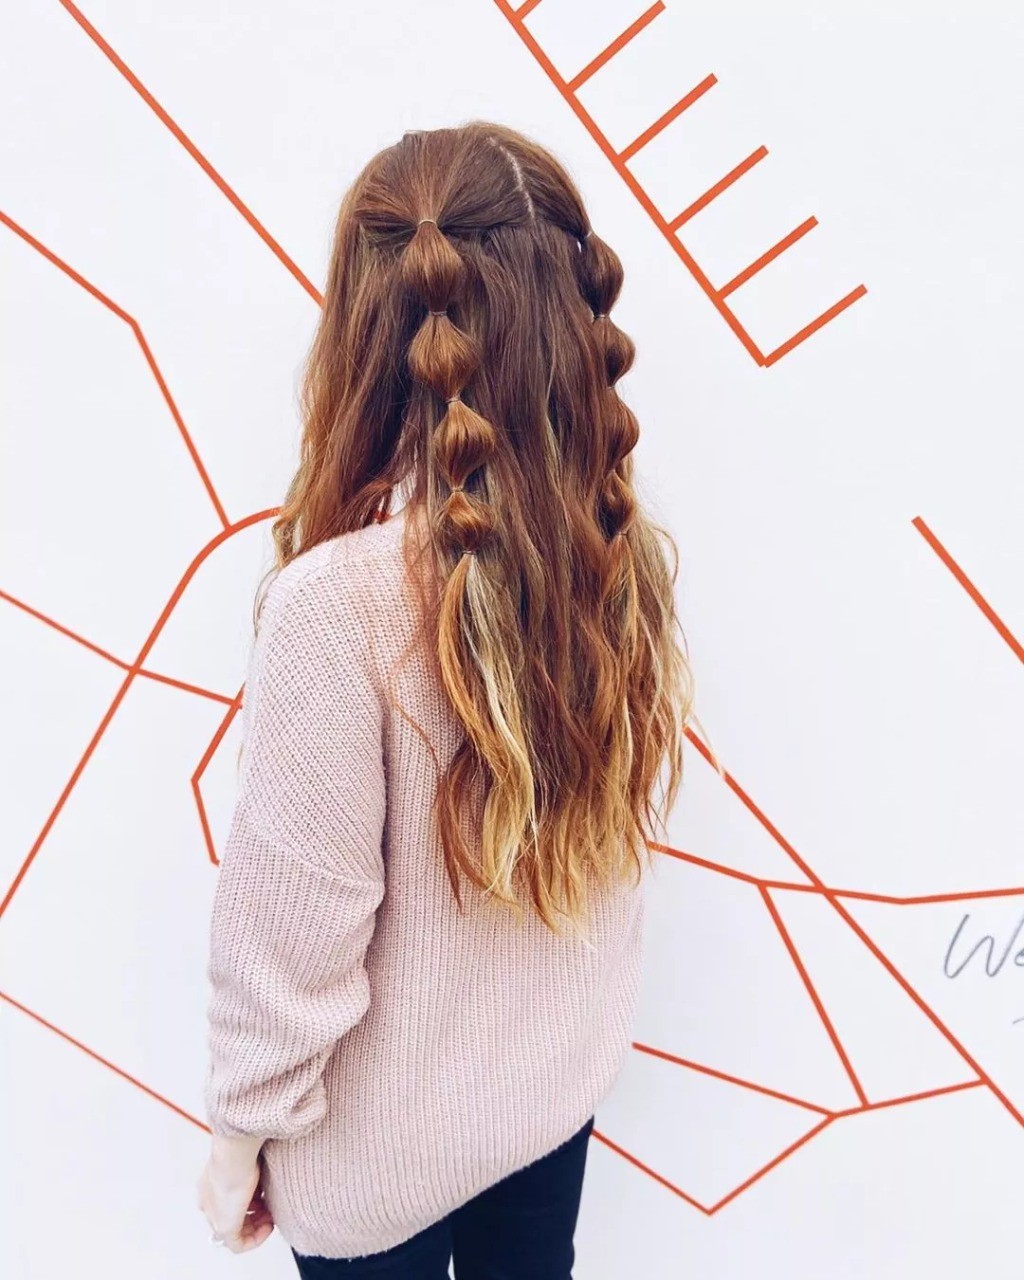 Inspiração de penteado para Festa Junina — Foto: Instagram @knot_professionals